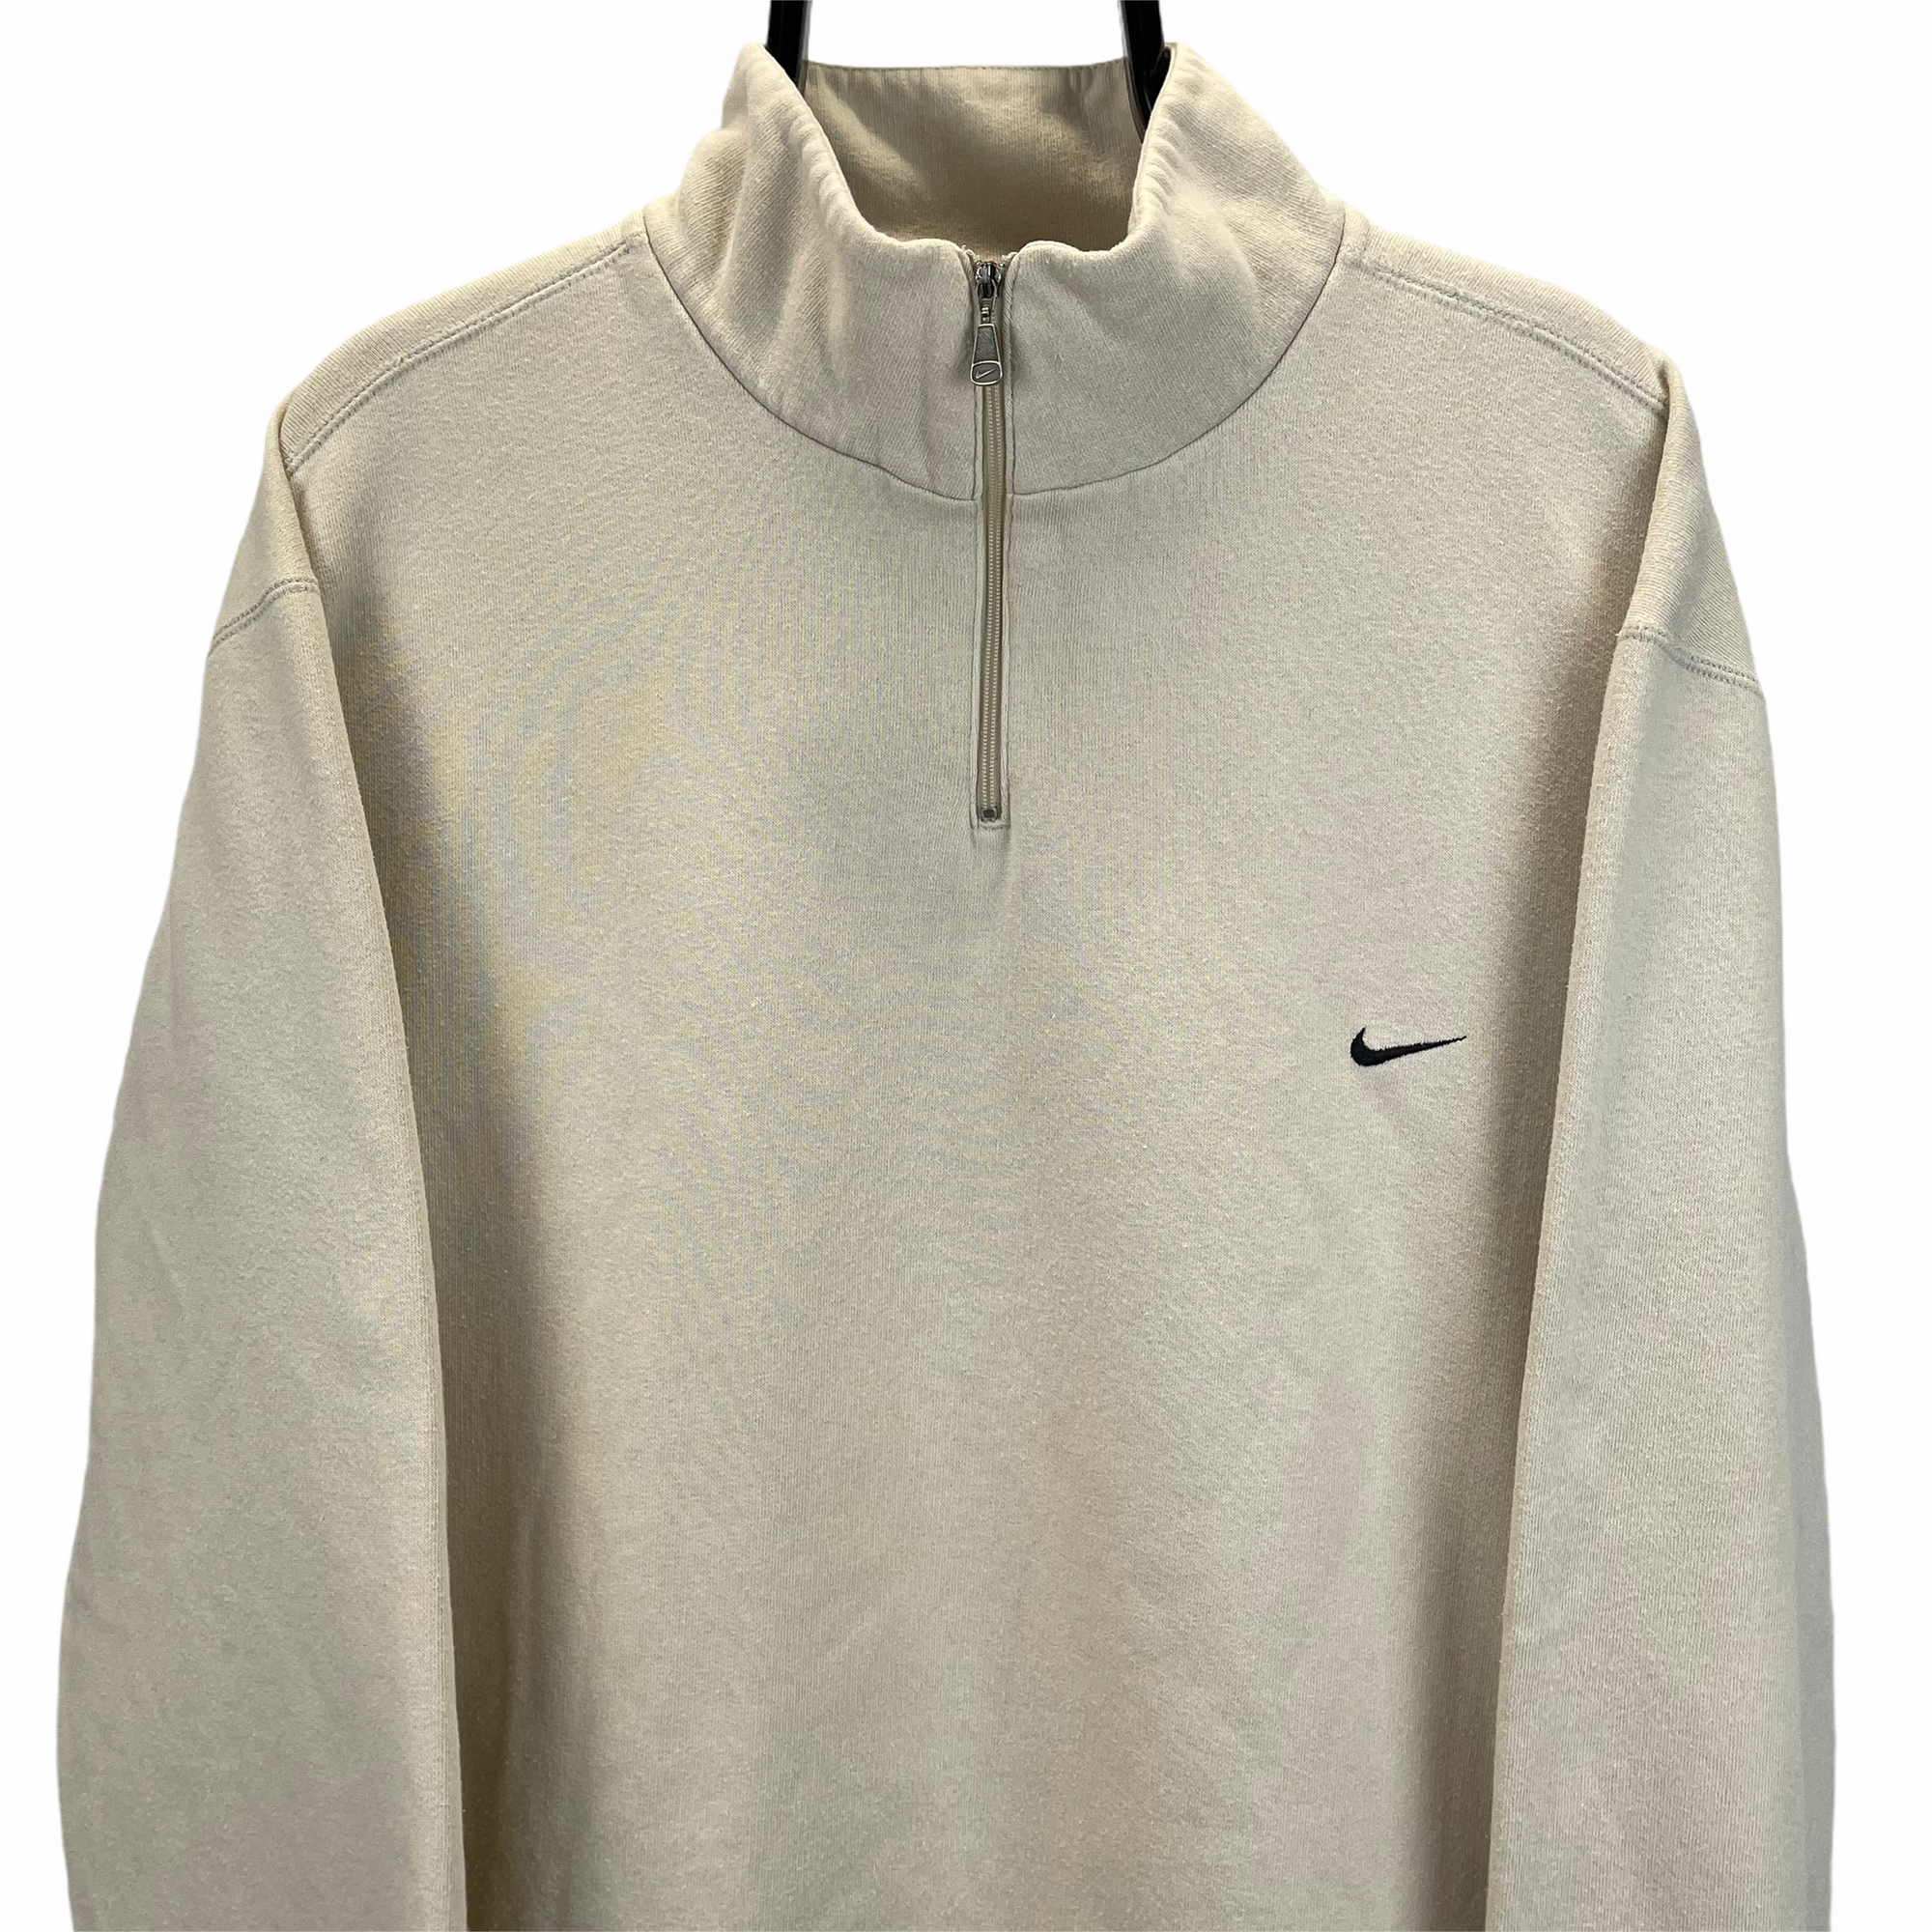 Vintage Nike Embroidered Swoosh 1/4 Zip Sweatshirt in Beige - Men's XL/Women's XXL